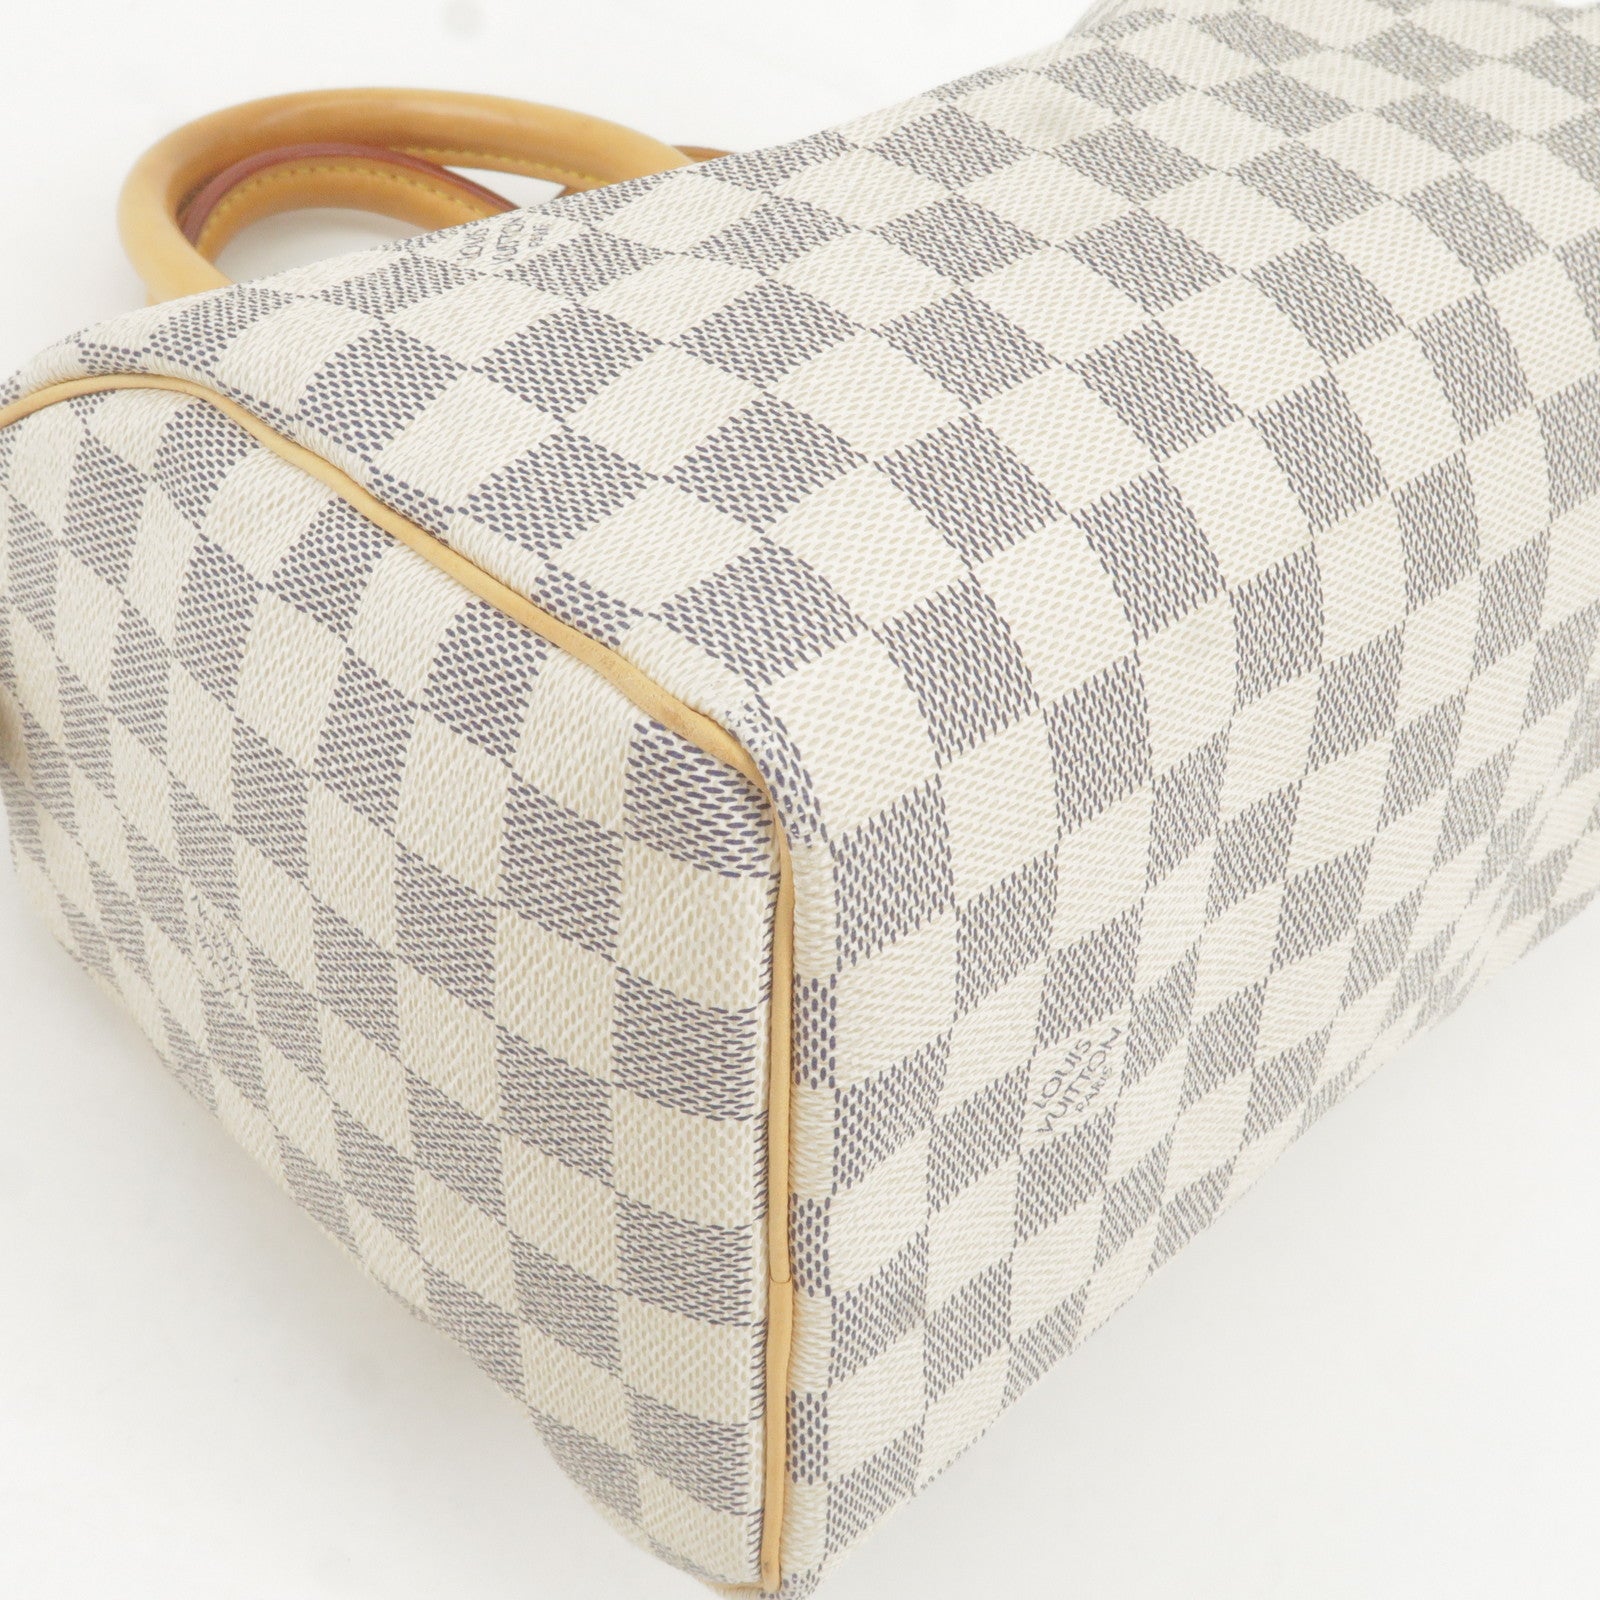 LOUIS VUITTON Handbag Sac Shopping Monogram Canvas Tote Bag W/Added Insert  A852